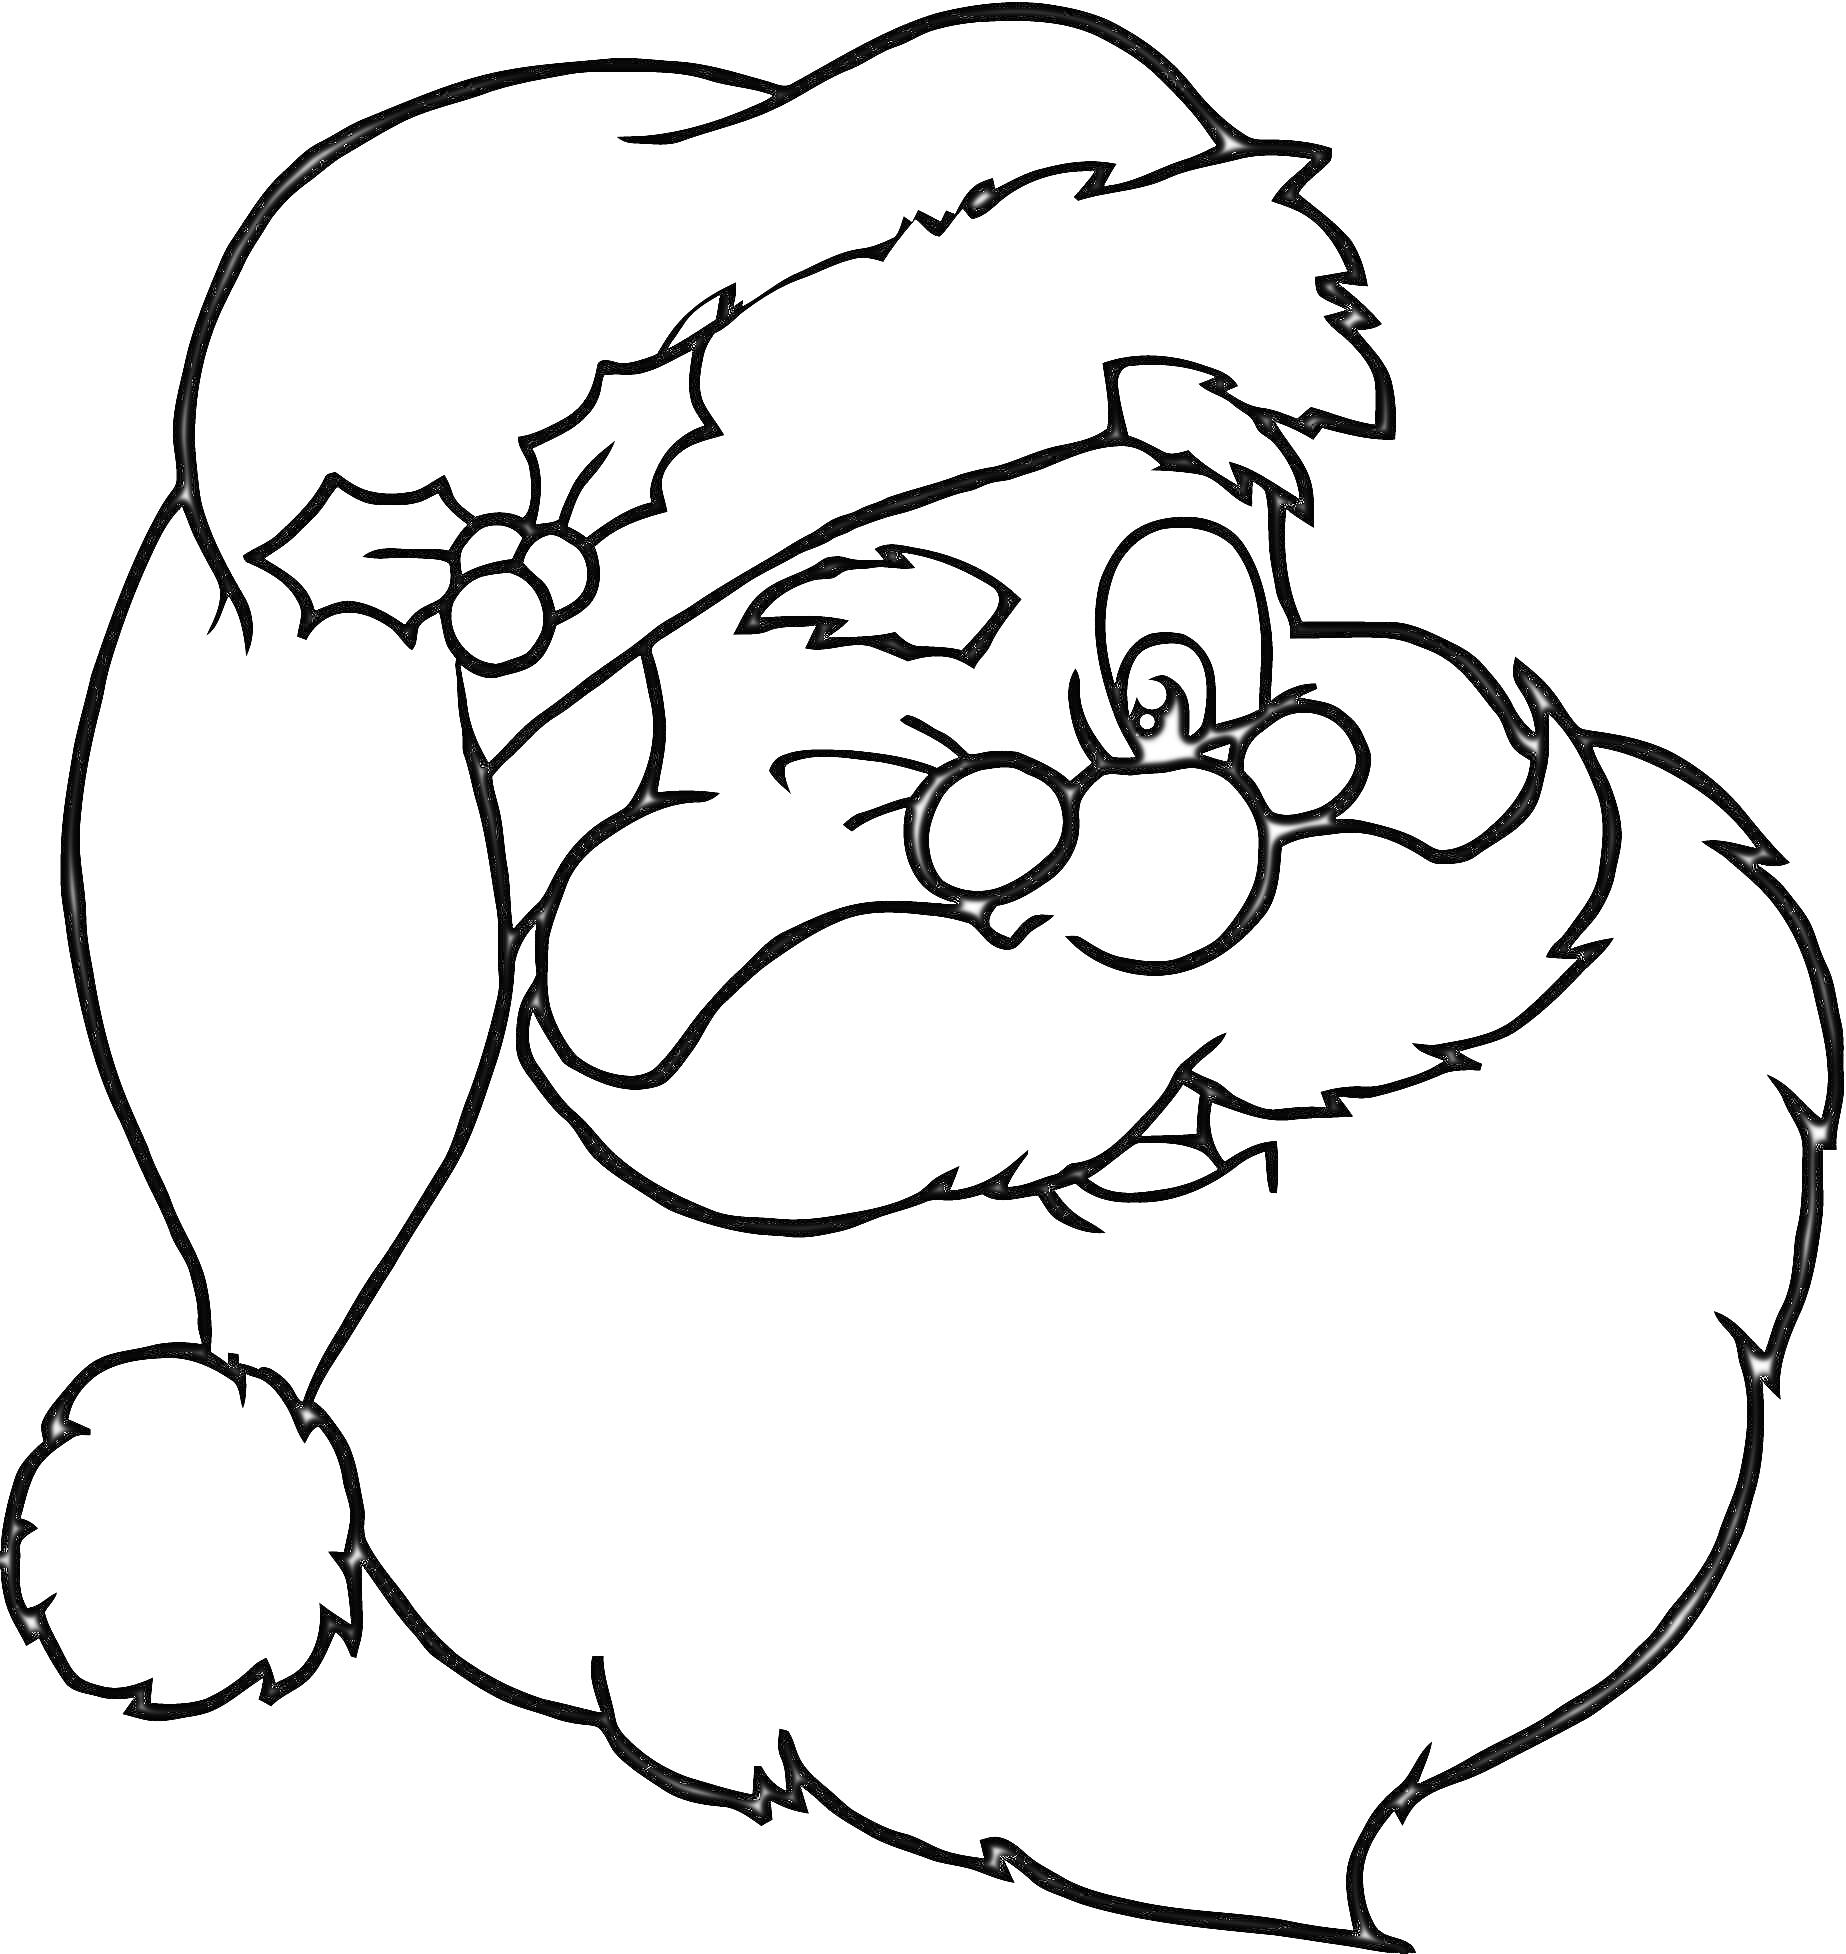 Раскраска Санта Клаус с помпонистой шапкой, бородой и омелой